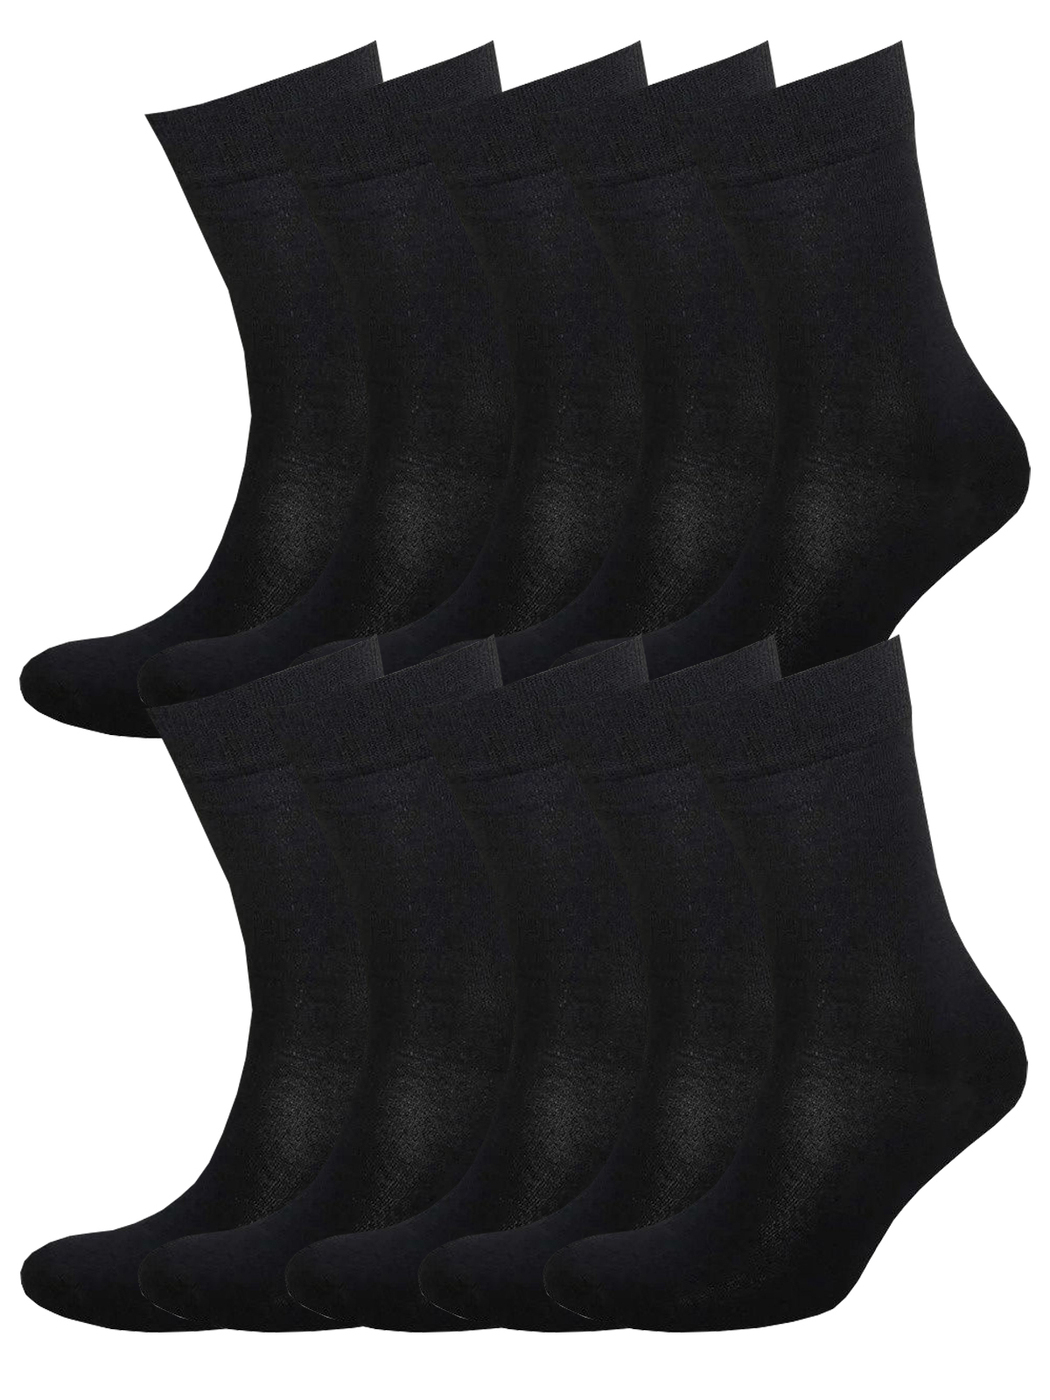 Комплект носков мужских Status Классические из хлопка 10 пар черных 25